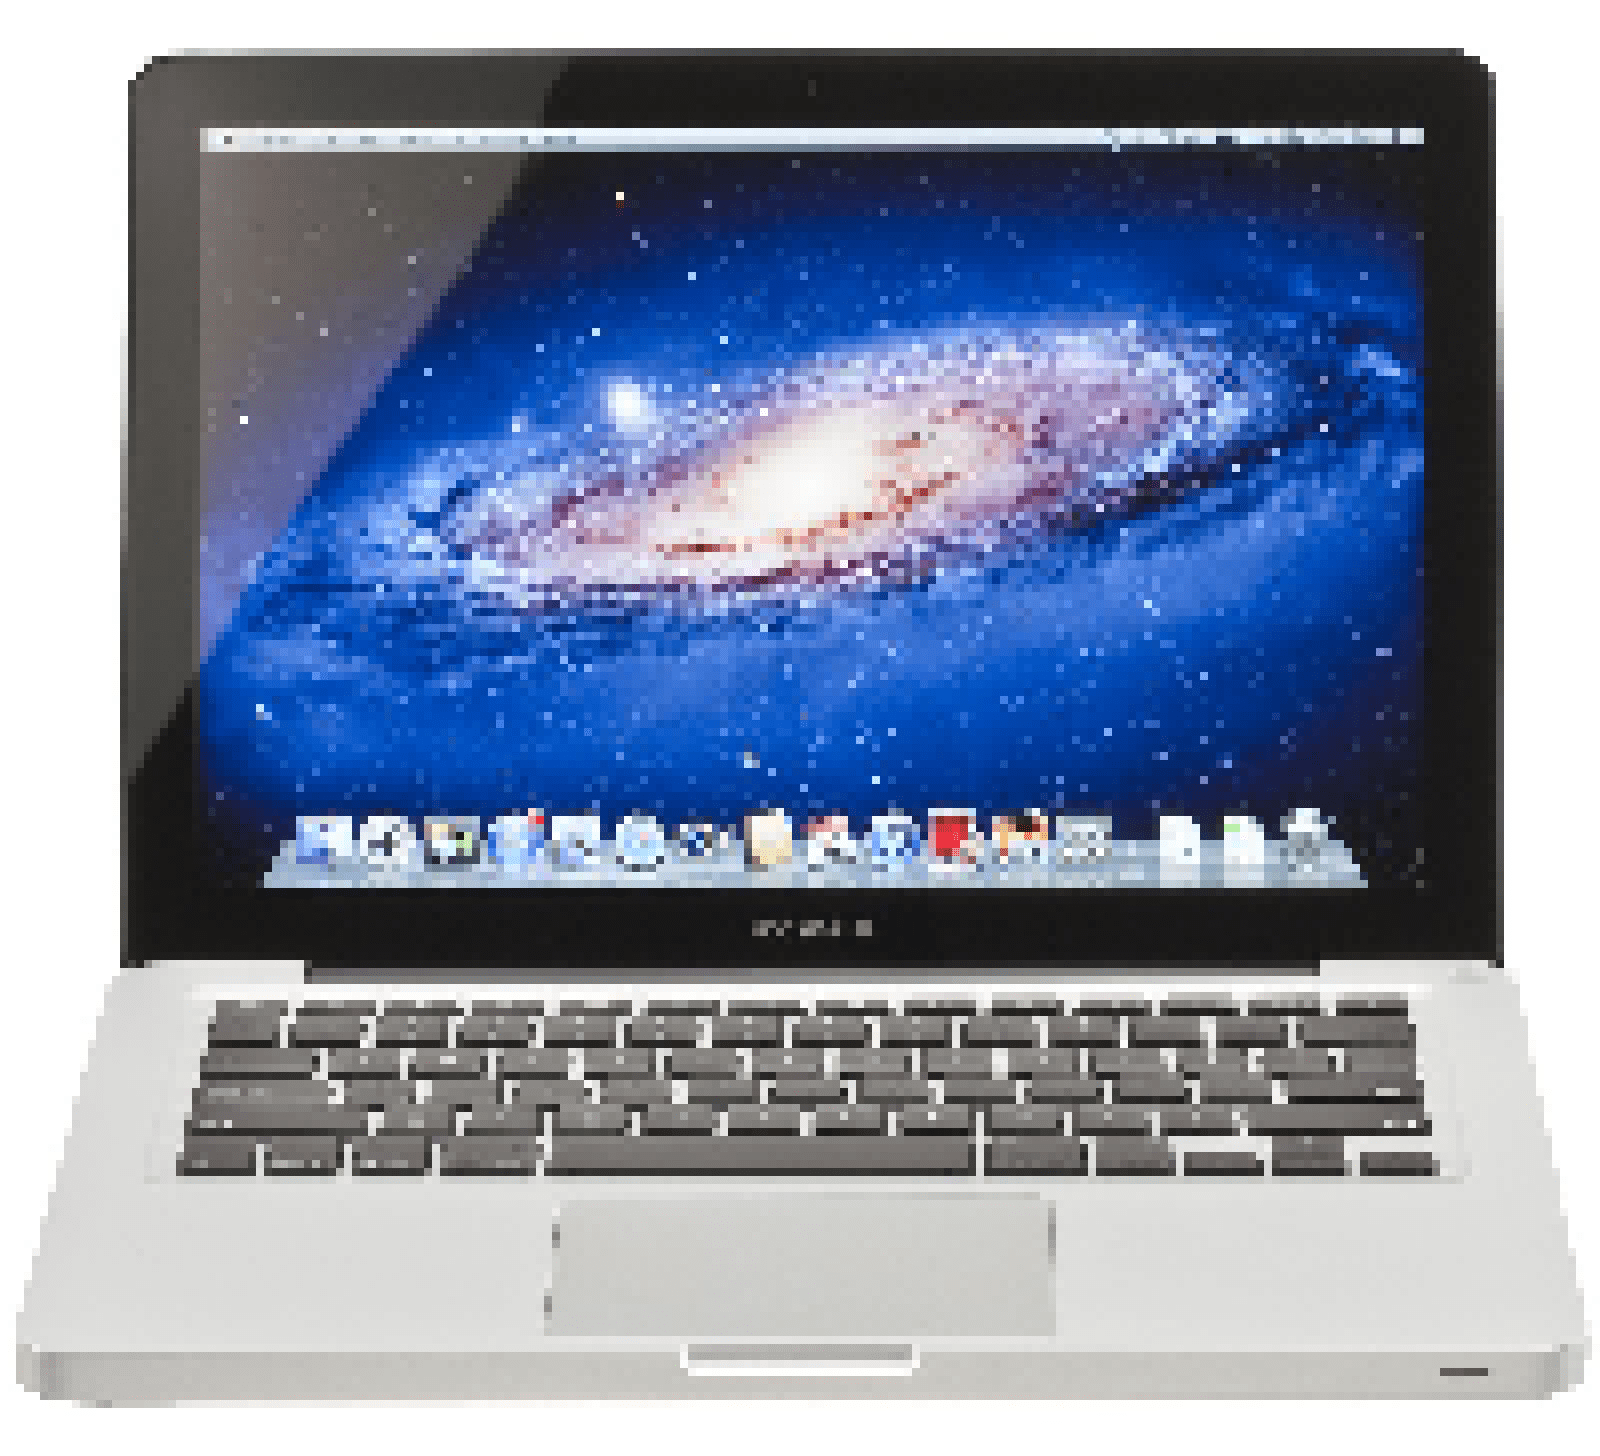 Apple MacBook Pro MD101LL⁄A 13-Inch Laptop (Intel Core i5 2.5GHz, 4GB RAM,  500GB HDD, Mac OS X El Capitan) Silver - 2012 Model-Used - Good